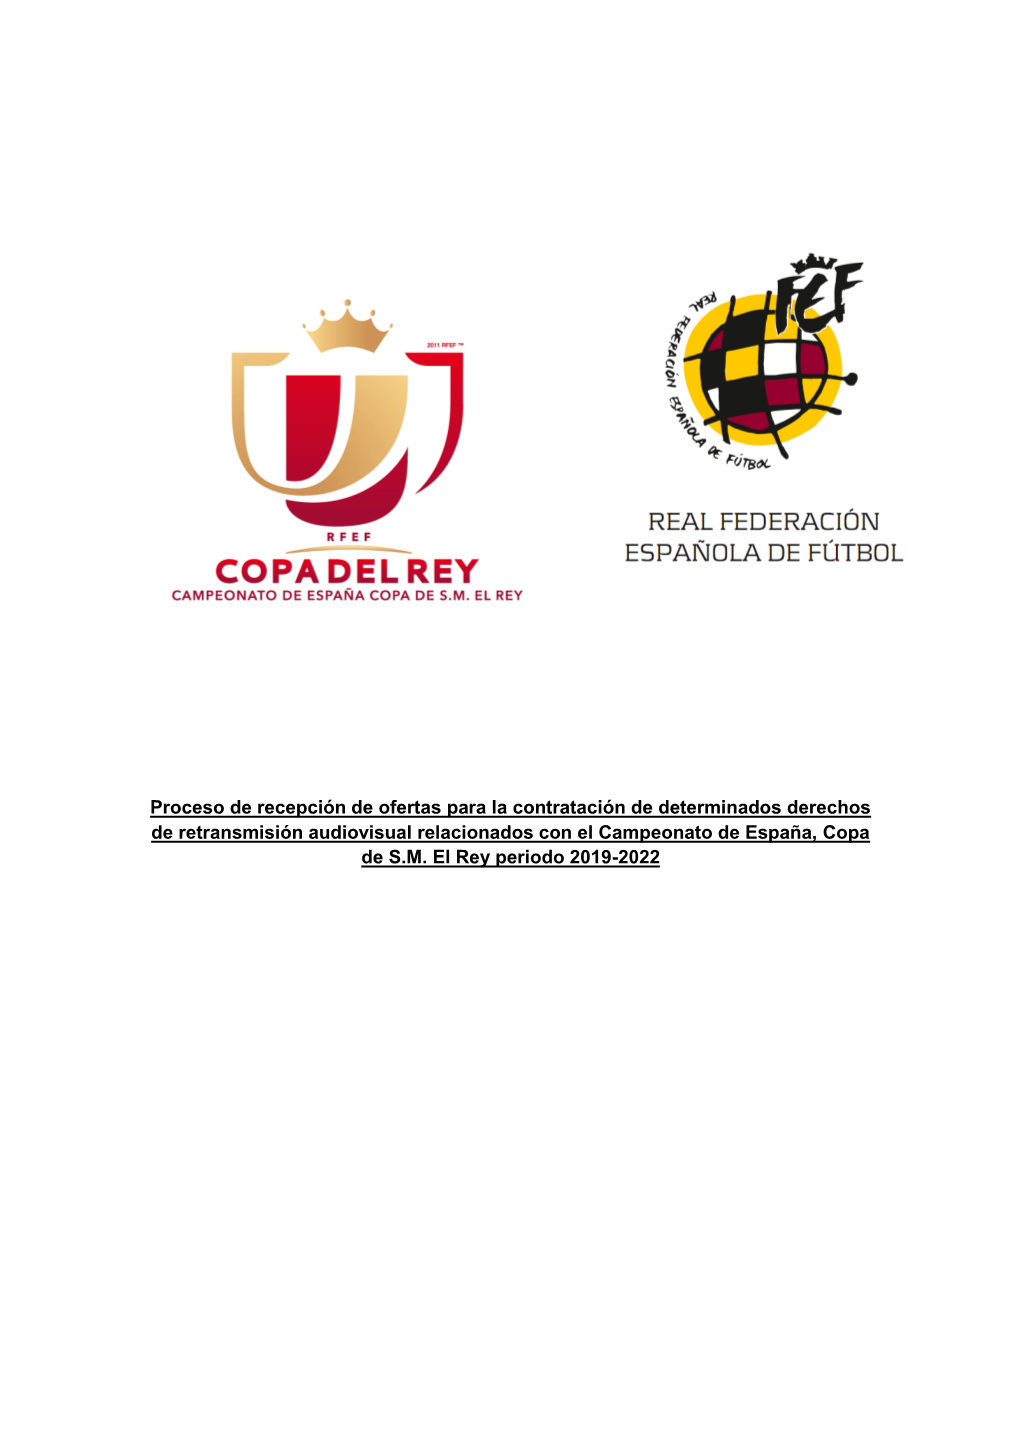 Proceso De Recepción De Ofertas Para La Contratación De Determinados Derechos De Retransmisión Audiovisual Relacionados Con El Campeonato De España, Copa De S.M